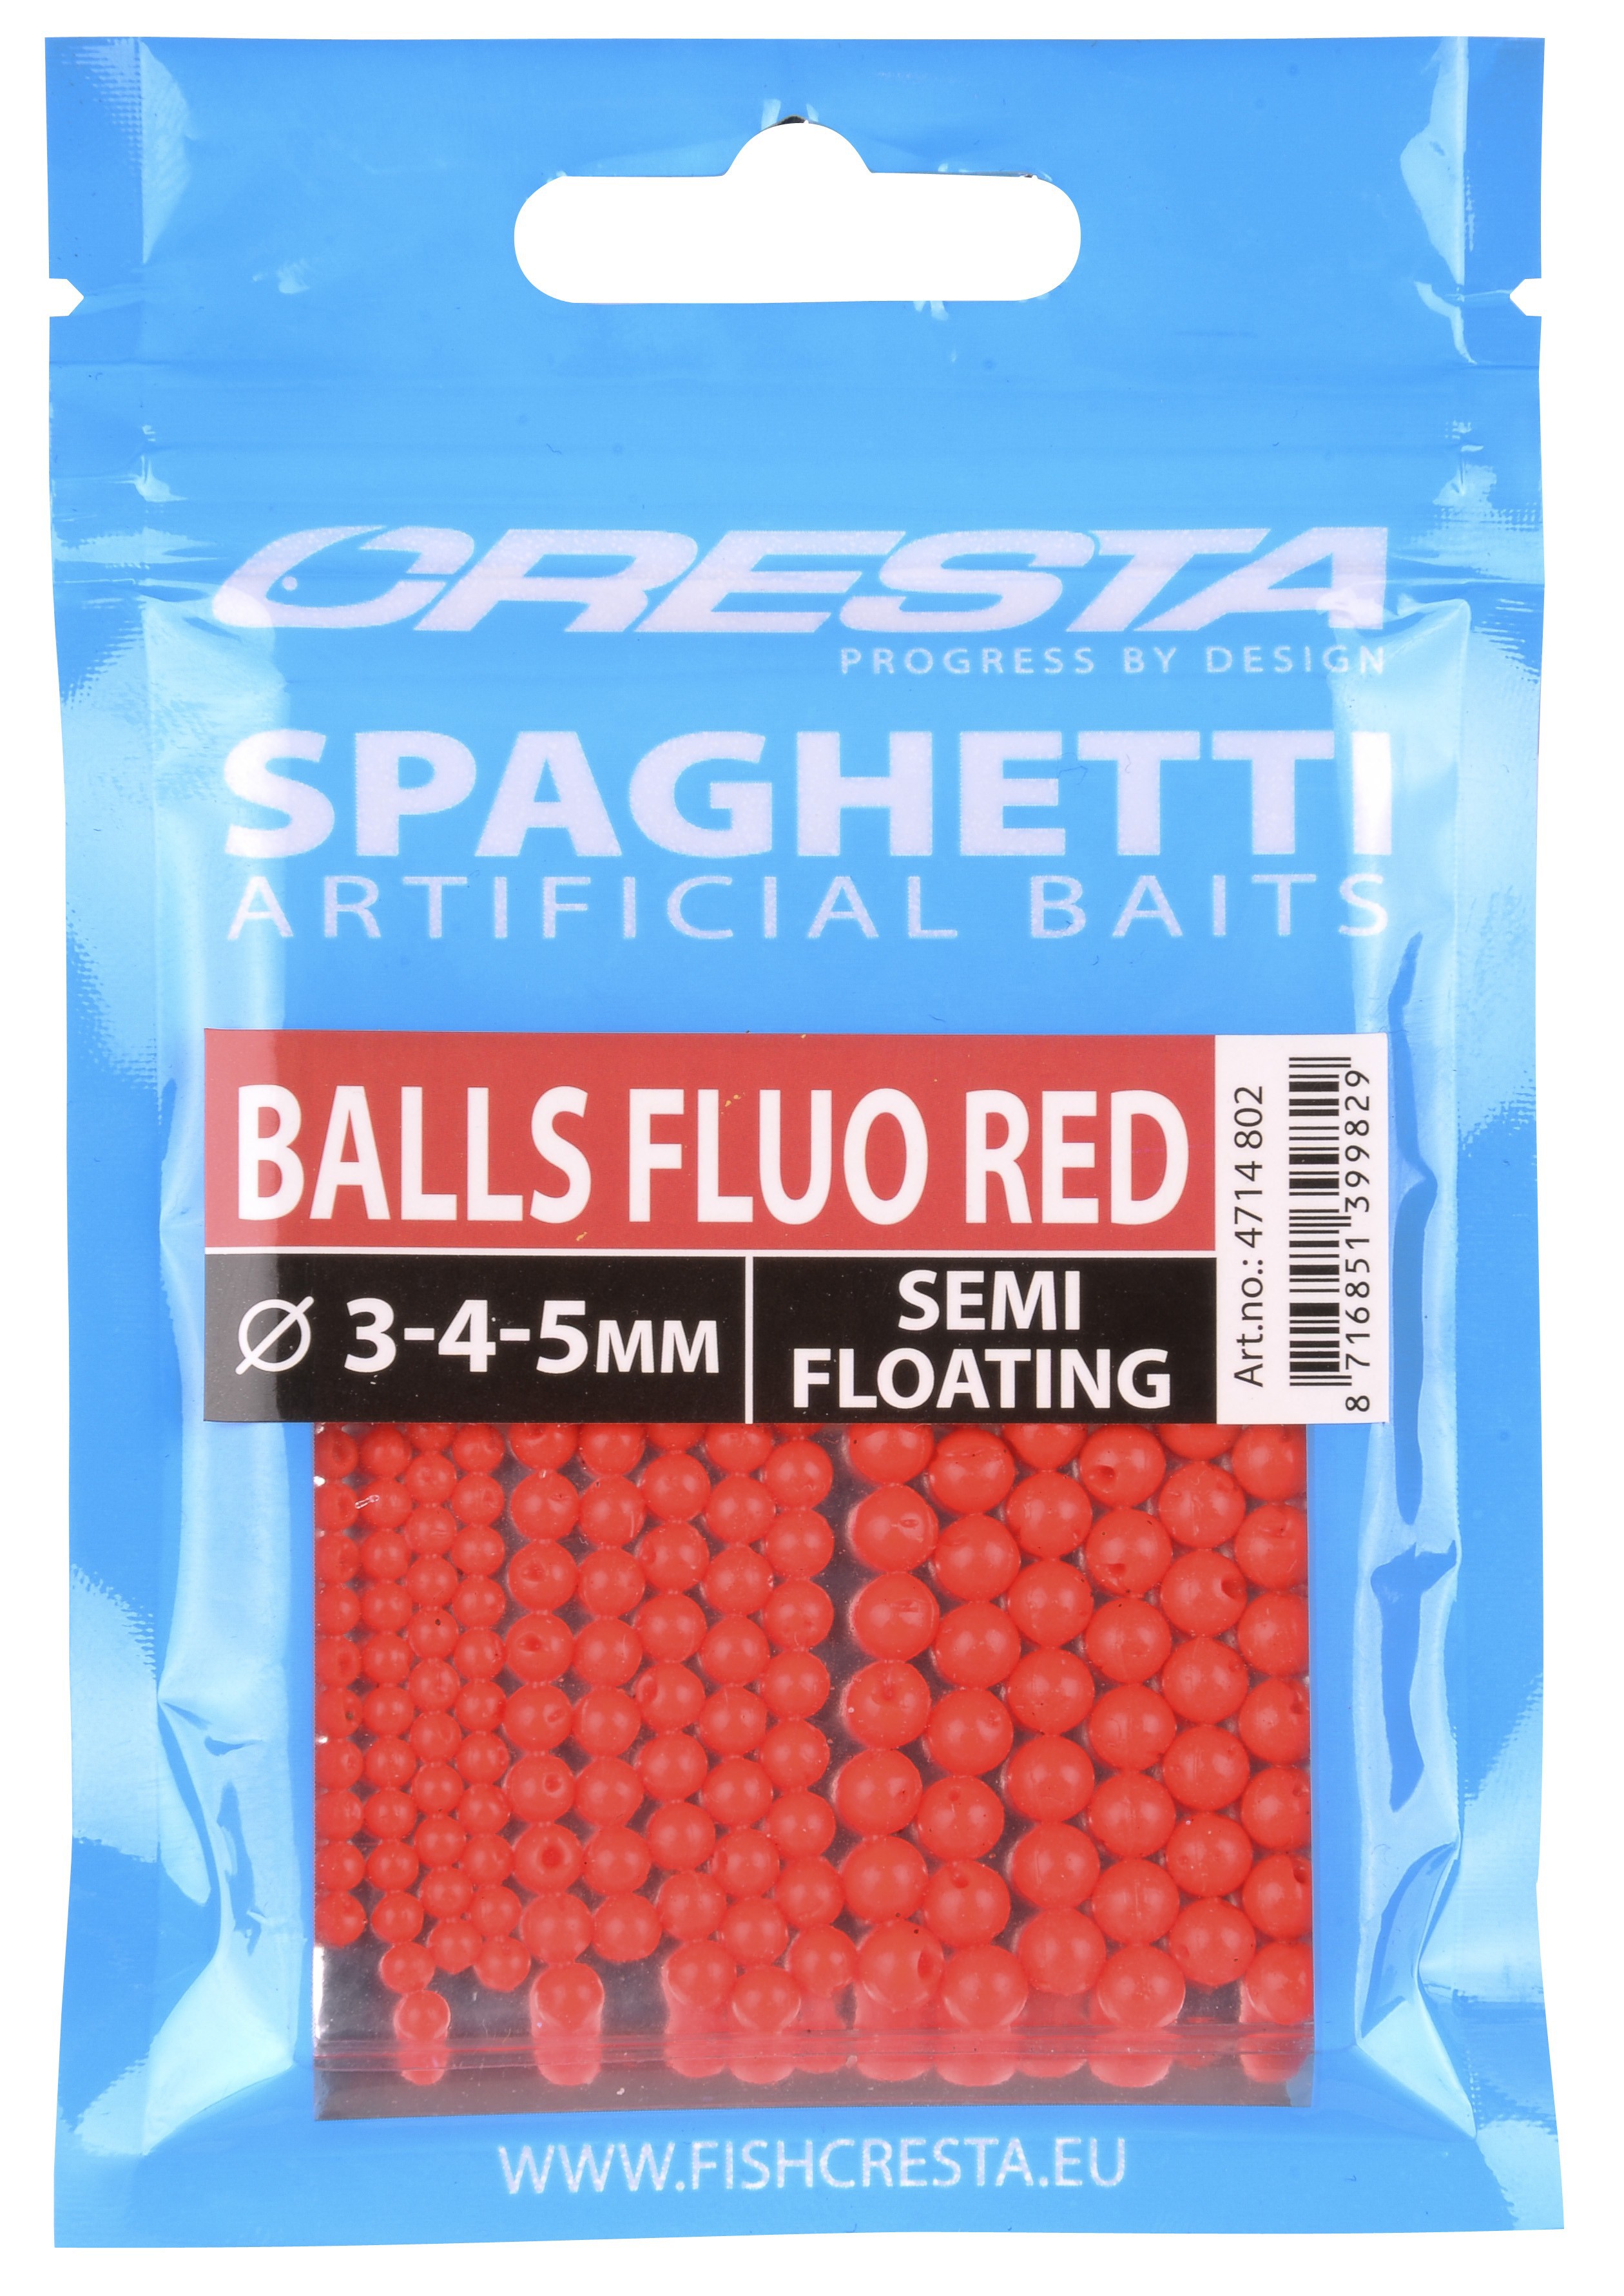 Spro – Cresta Spaghetti Balls Fluo Red